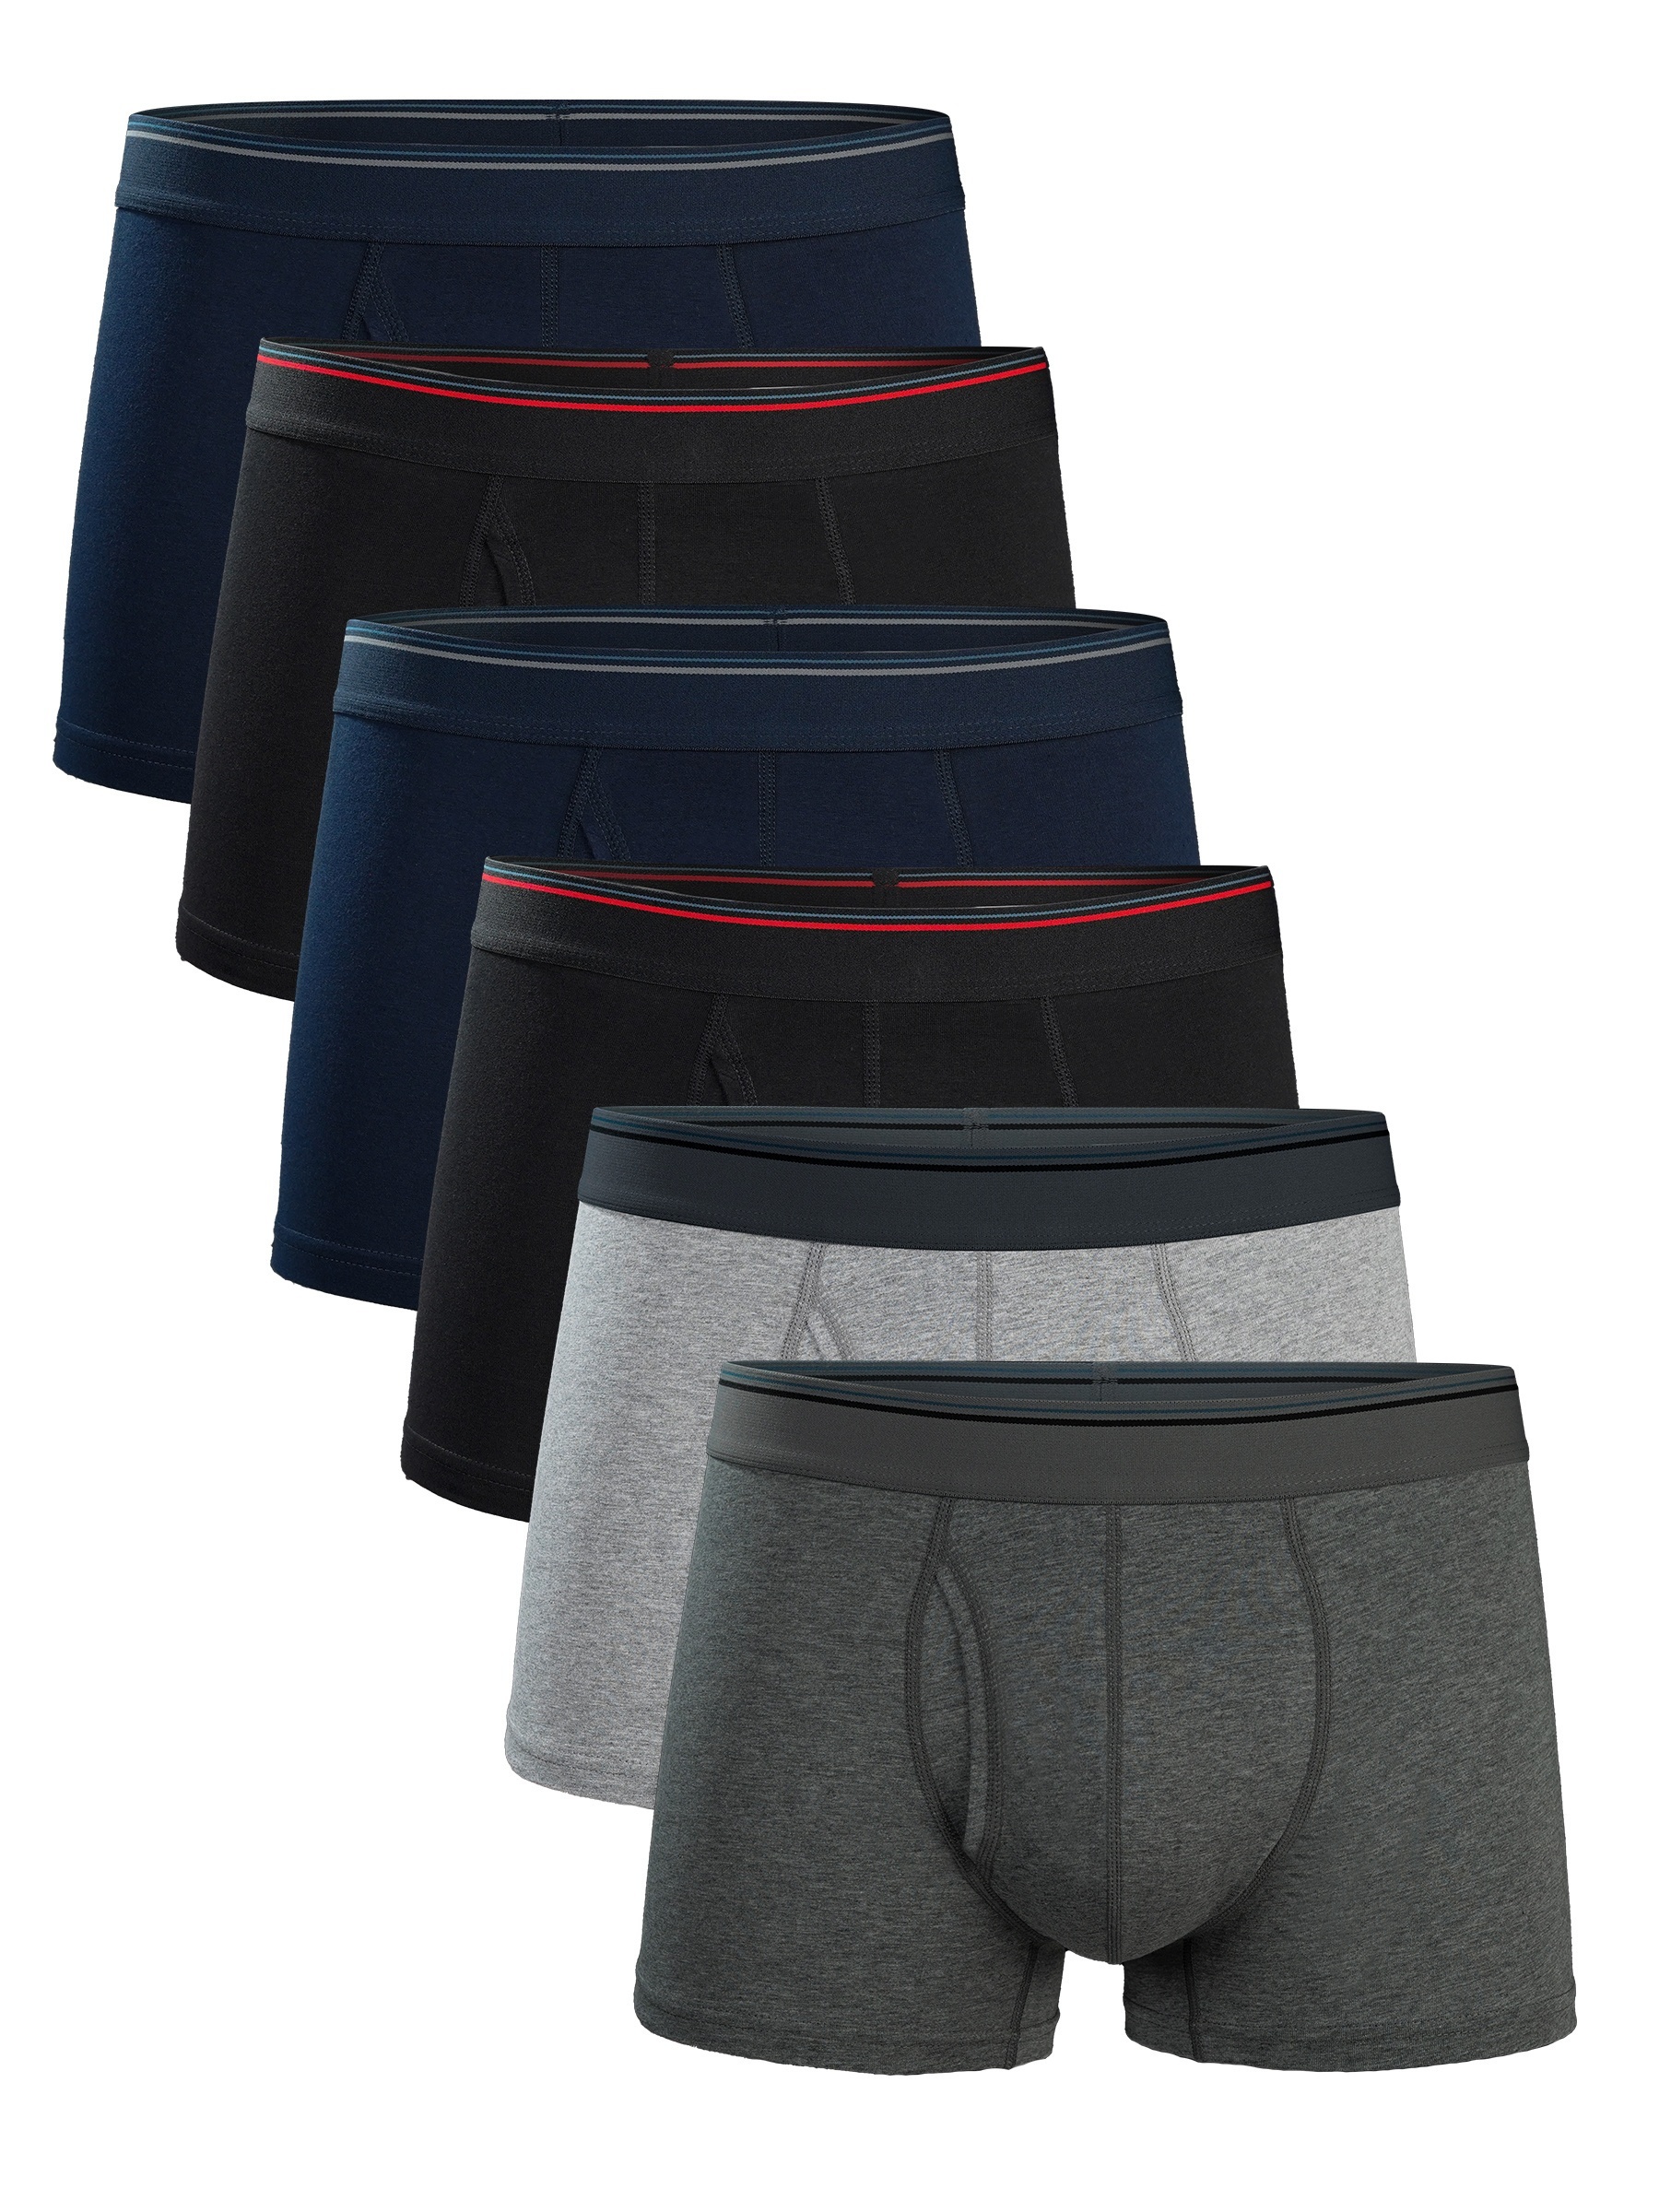 6pcs Men's Underwear, Comfortable Soft Skin-friendly U-pouch Boxer Briefs  Shorts, Cotton Underpants